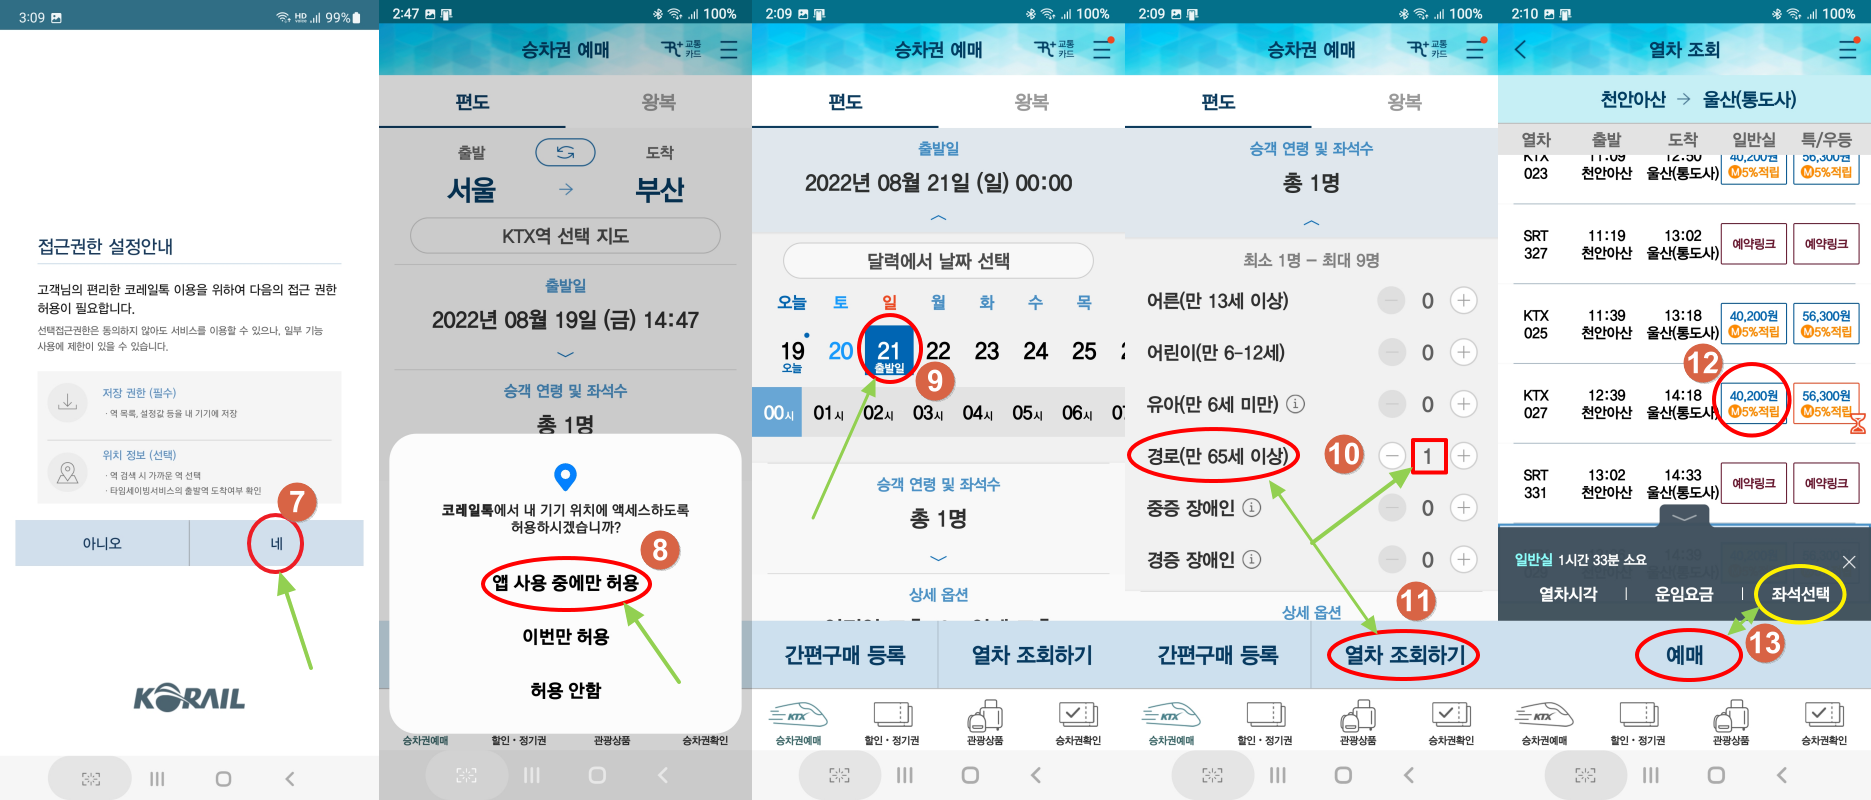 코레일톡 앱 이용 기차표 예약 순서1